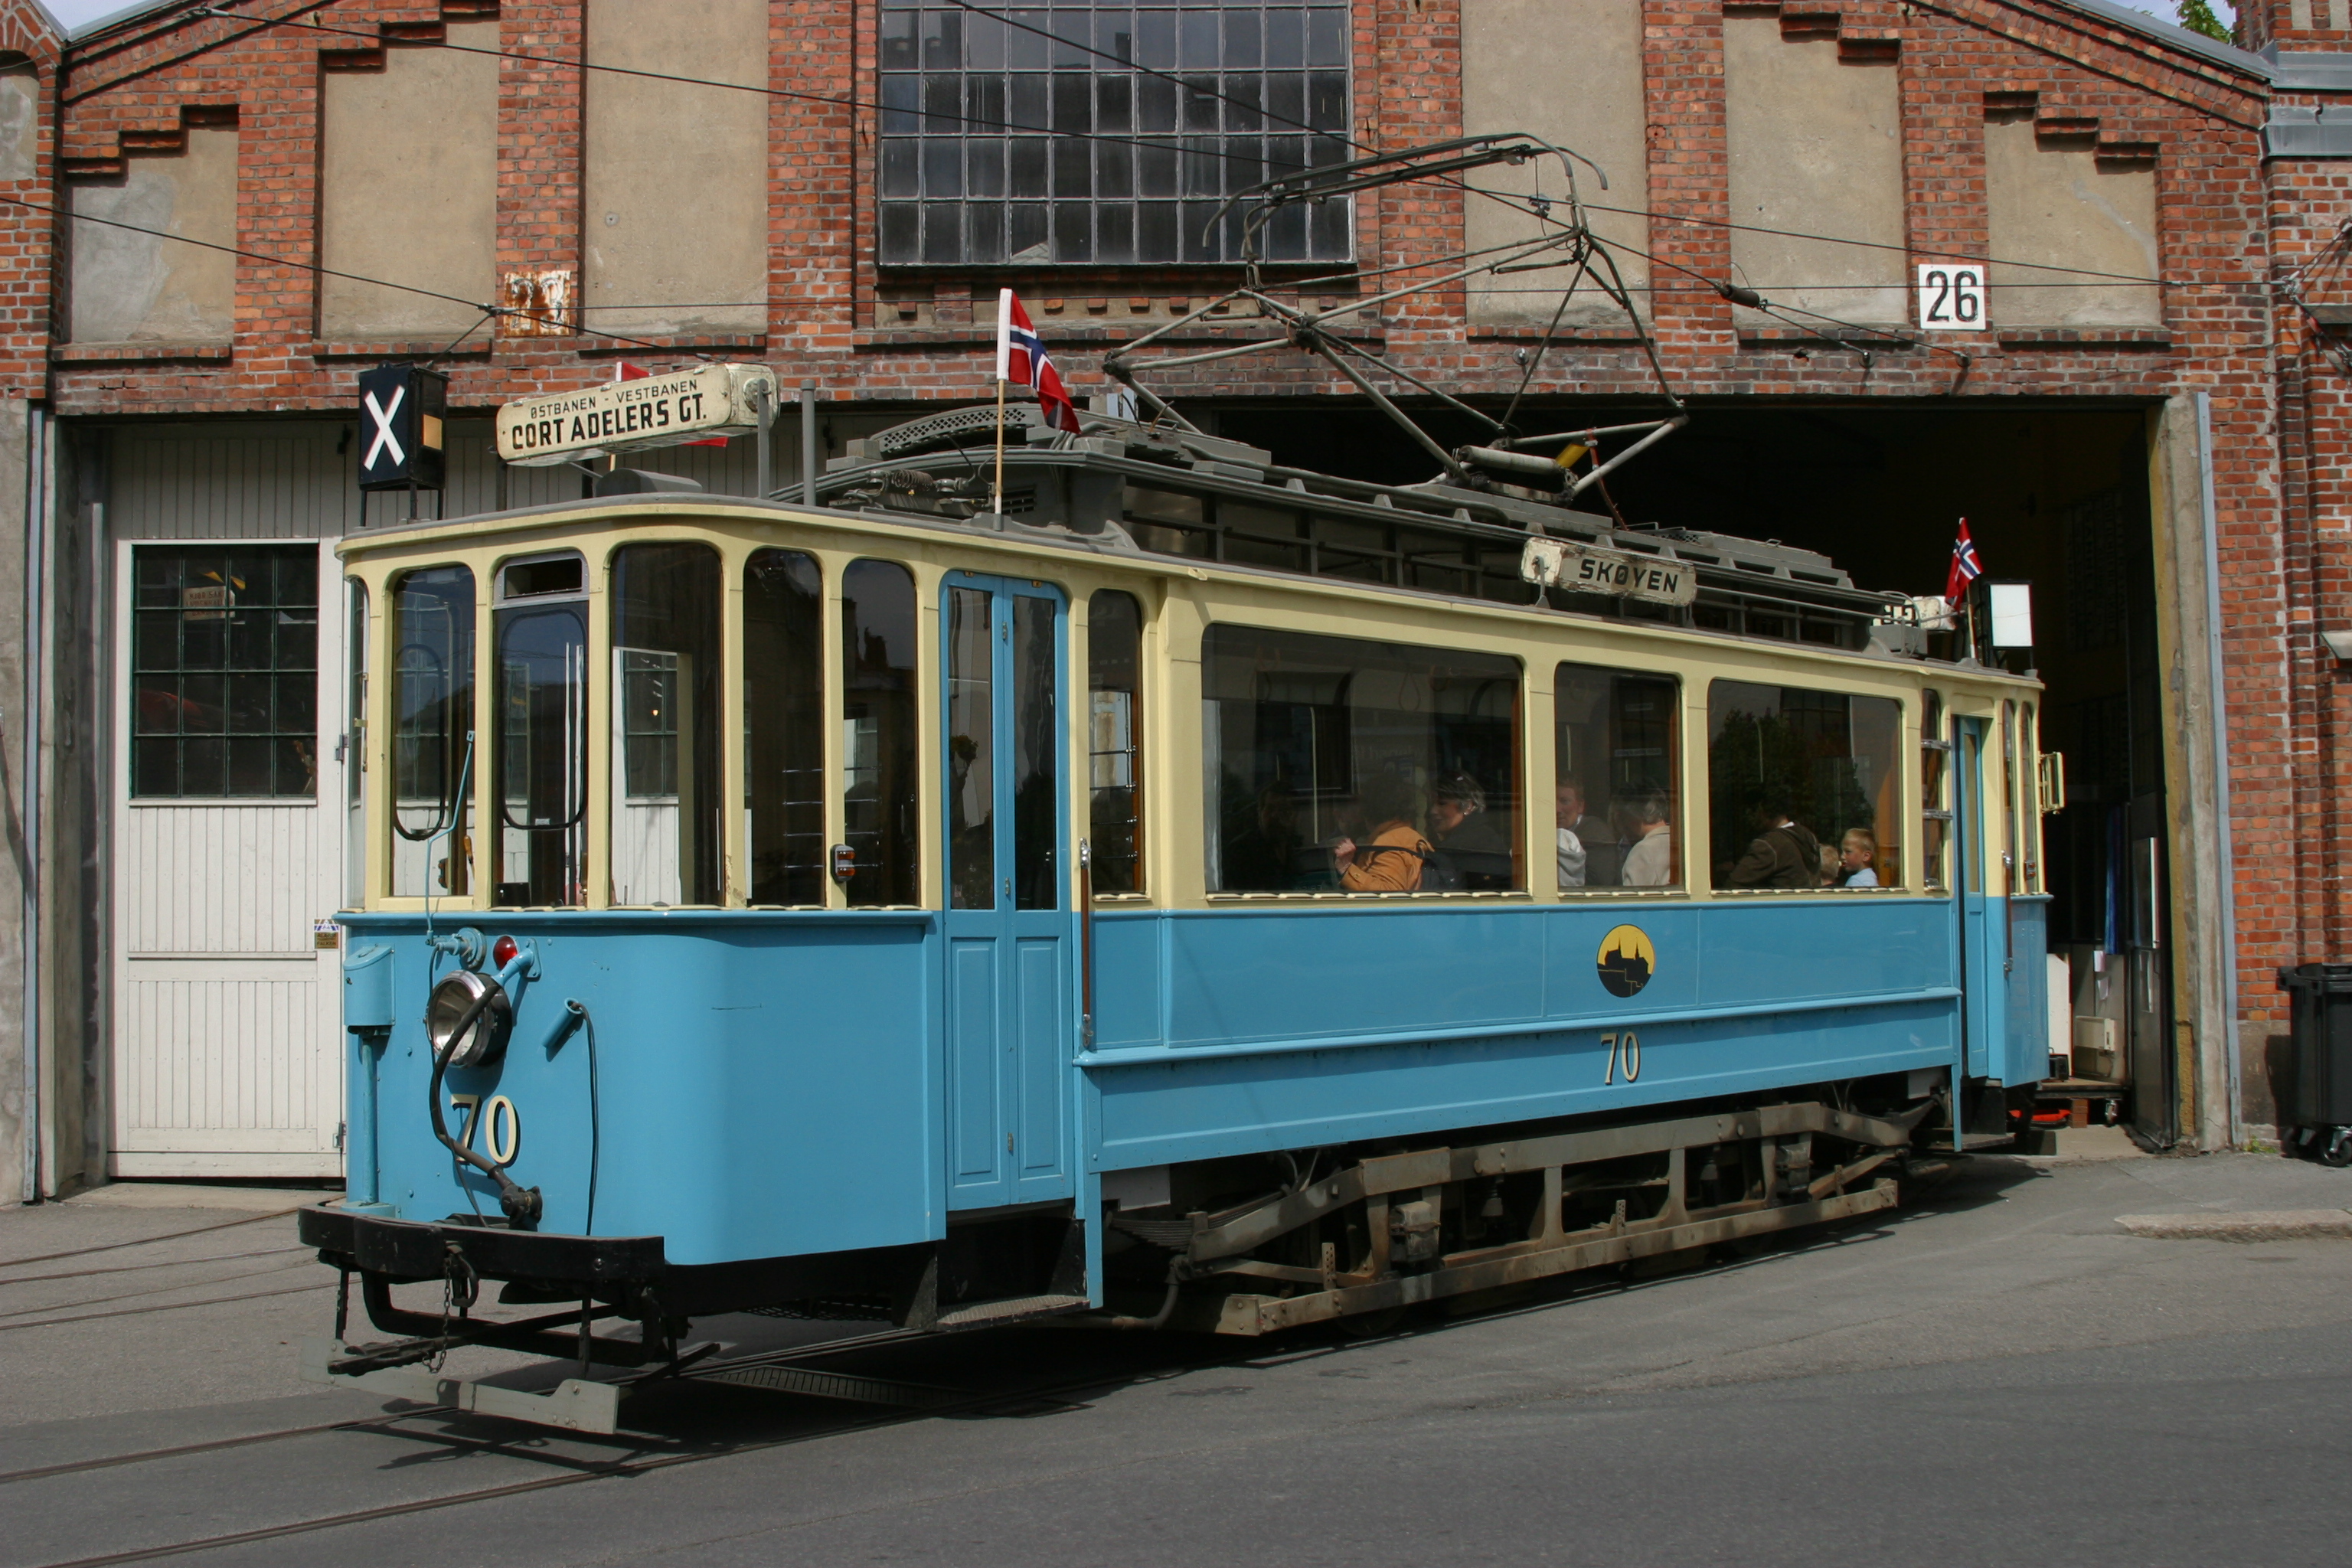 File:Old Tram in Oslo TRS 050515 008.jpg - Wikimedia Commons